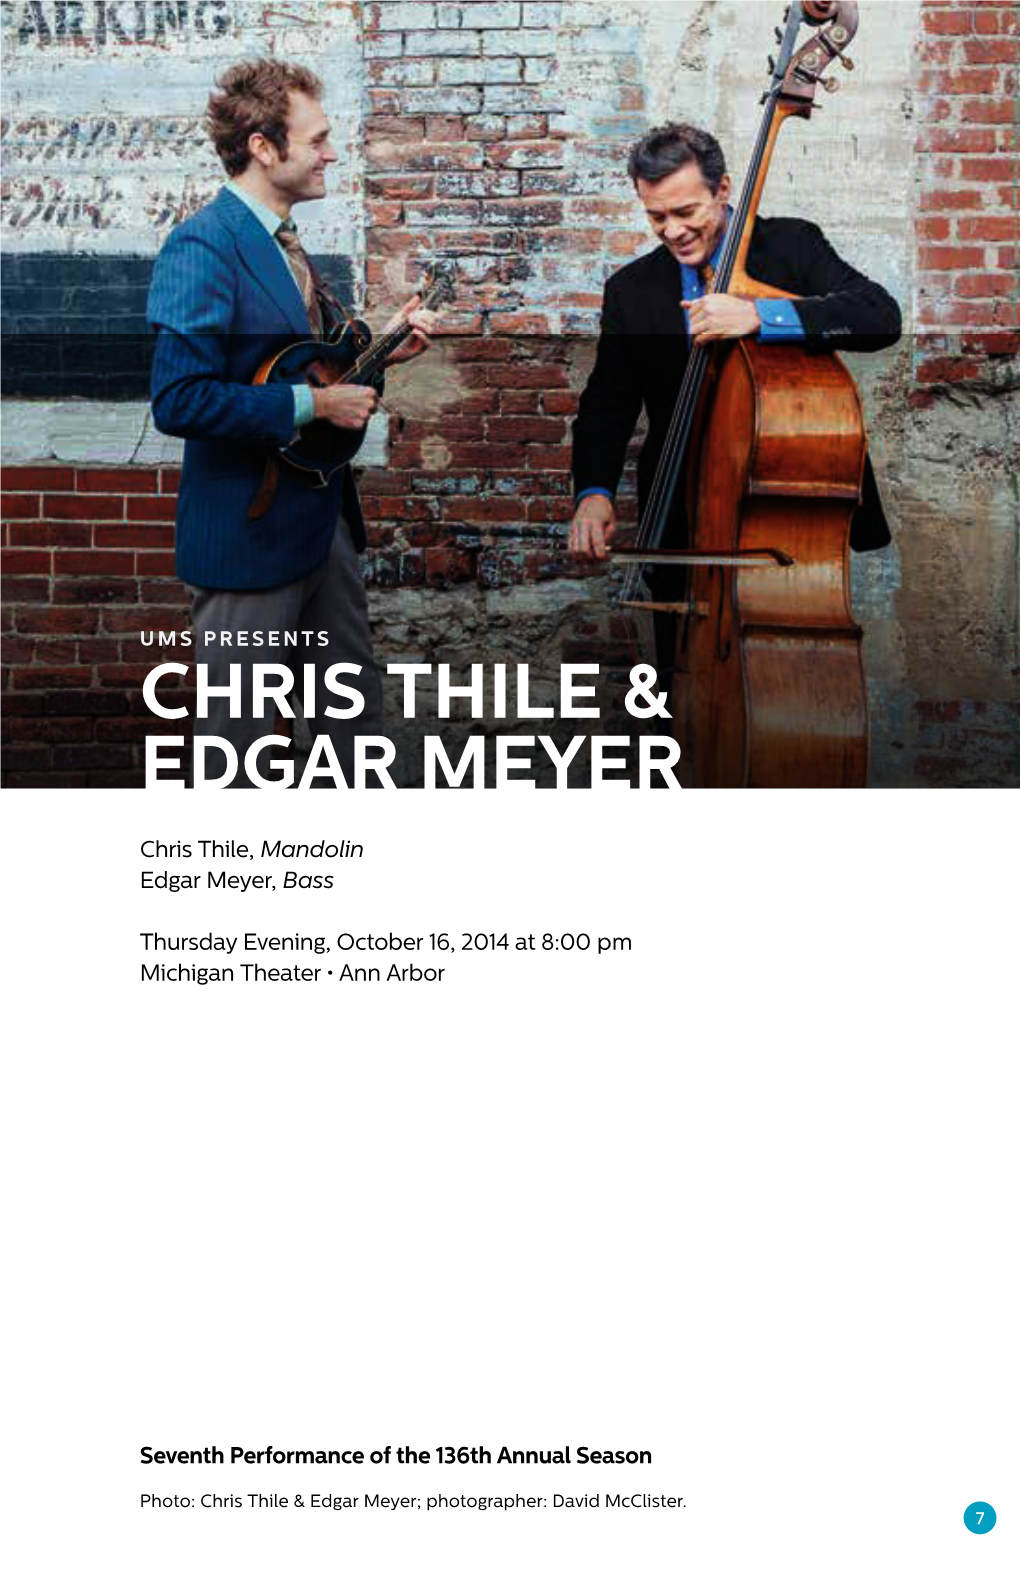 Chris Thile & Edgar Meyer